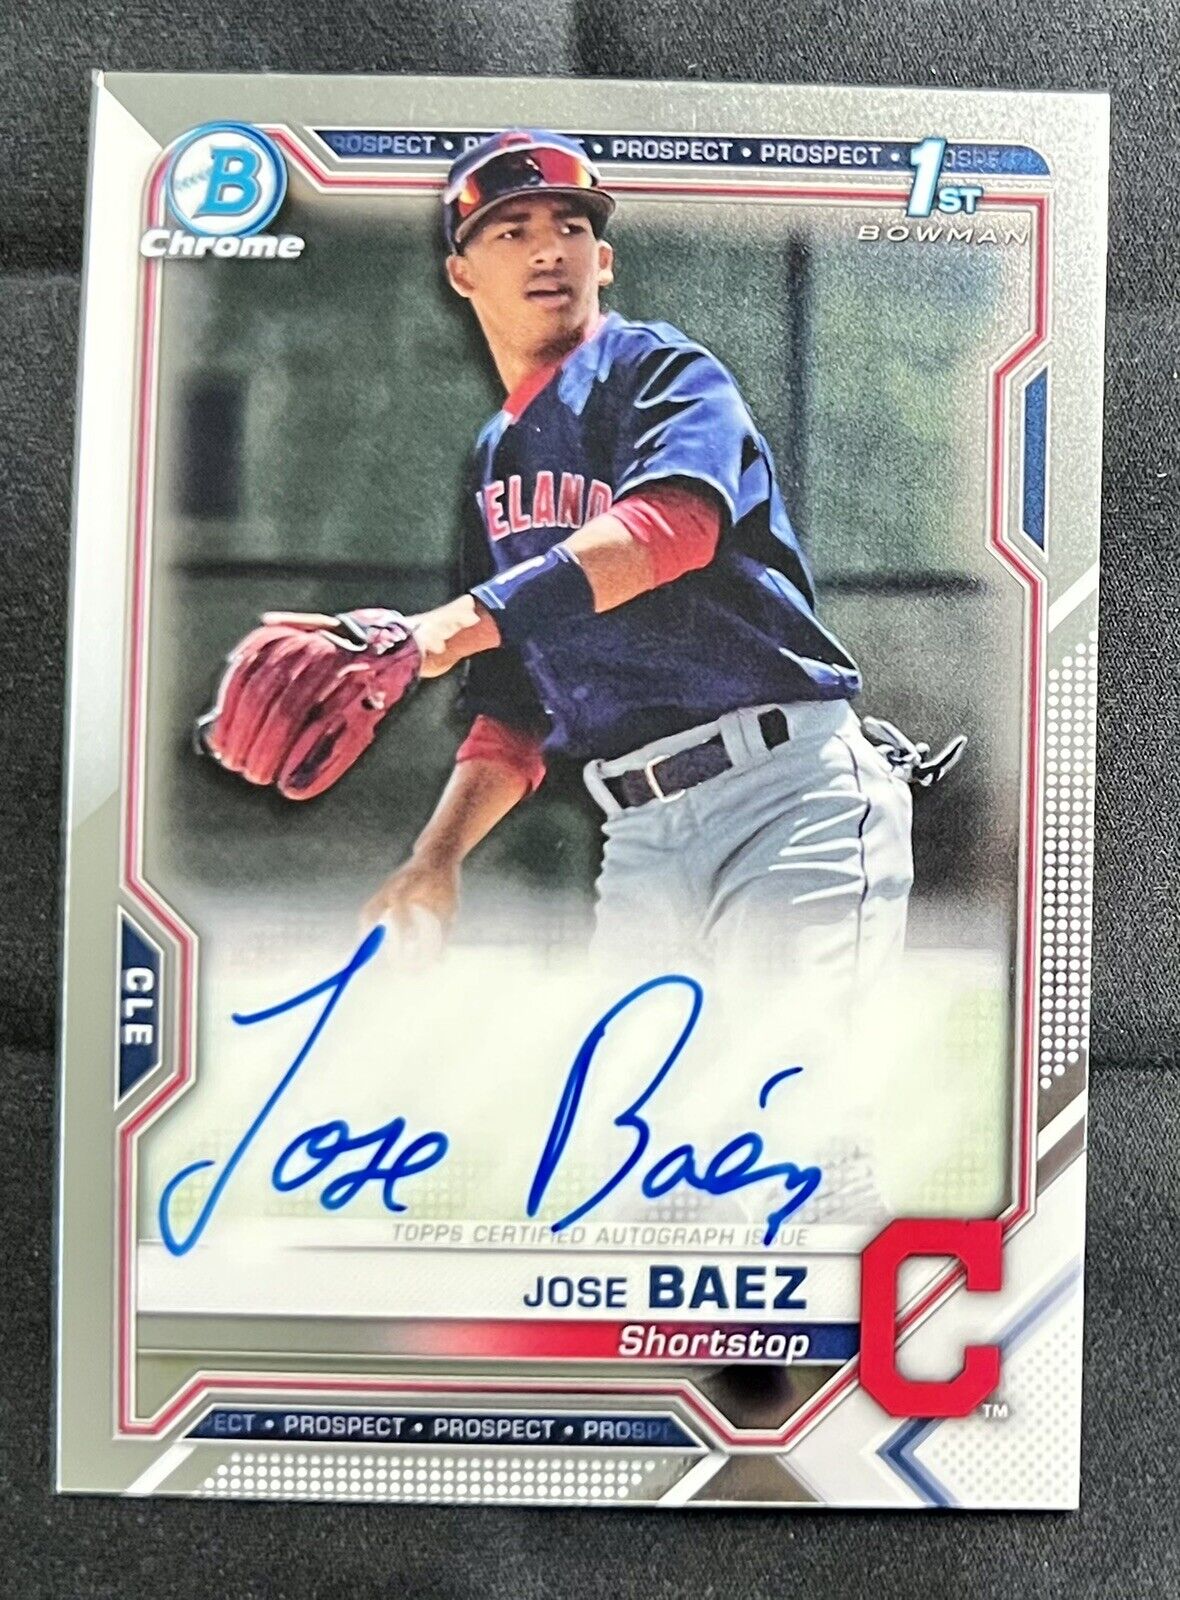 2021 Bowman Chrome Jose Baez 1st Bowman On Card Autograph Cleveland Indians